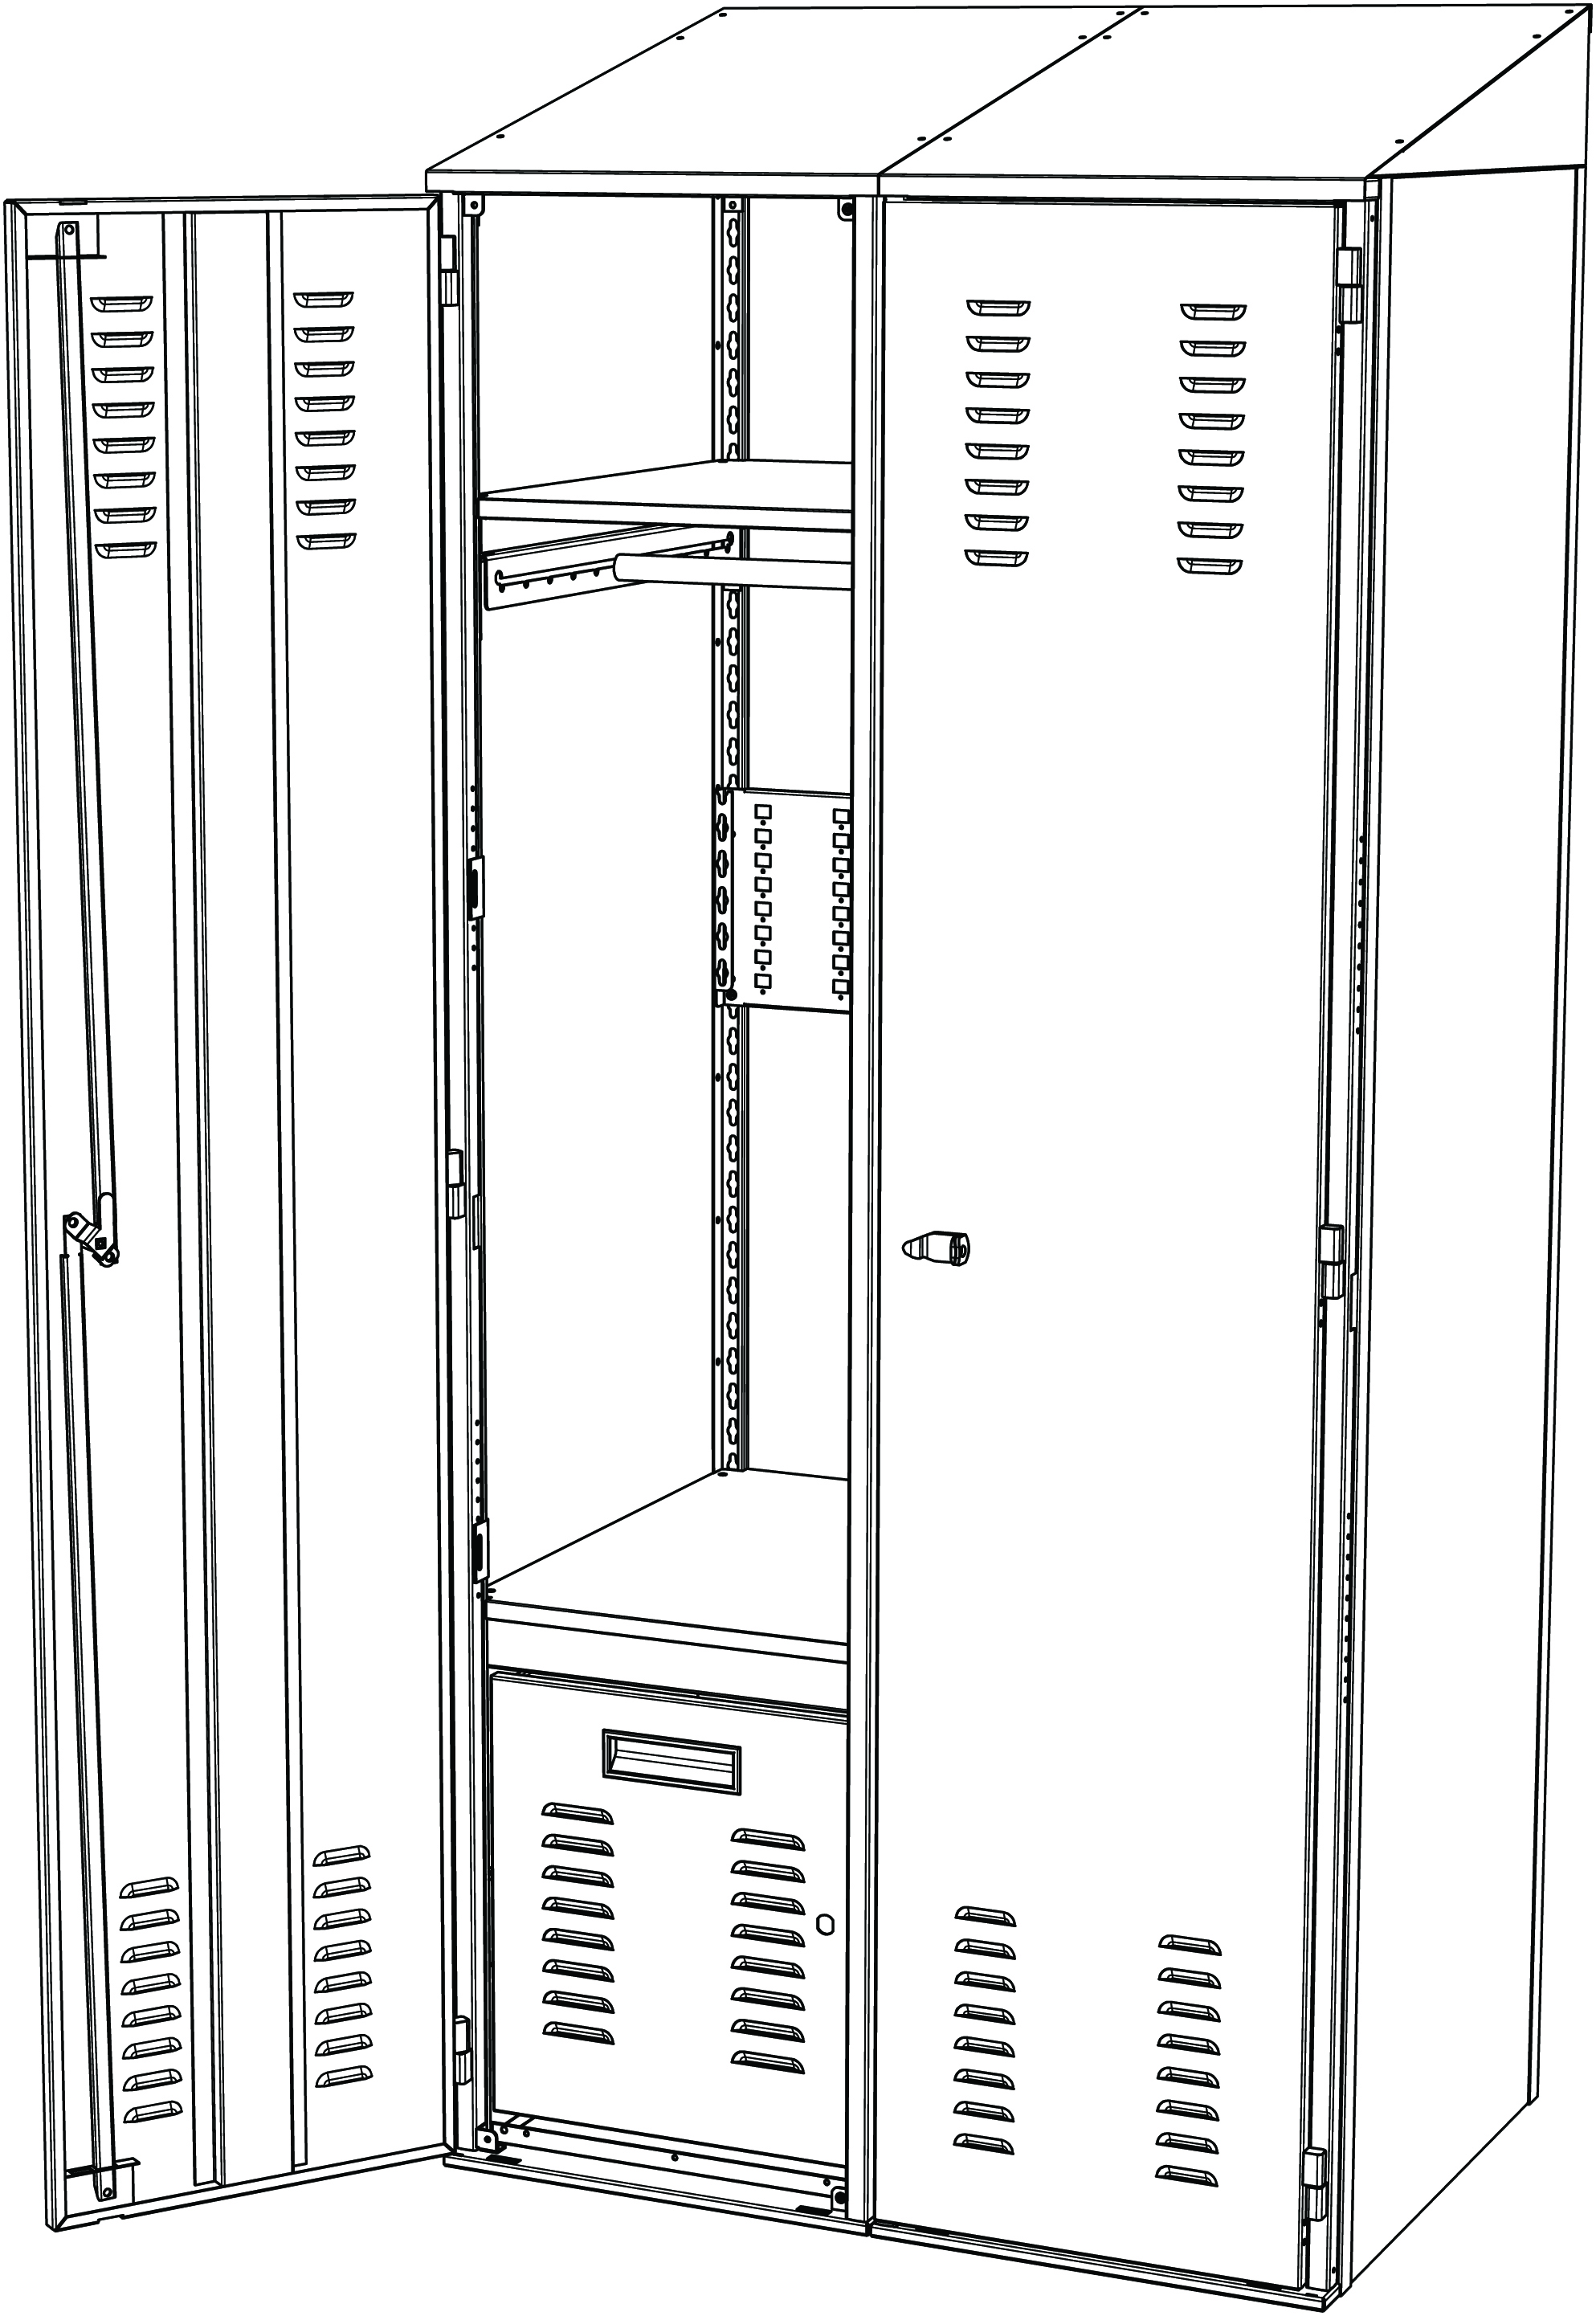 Personal Storage Locker - Starter Unit